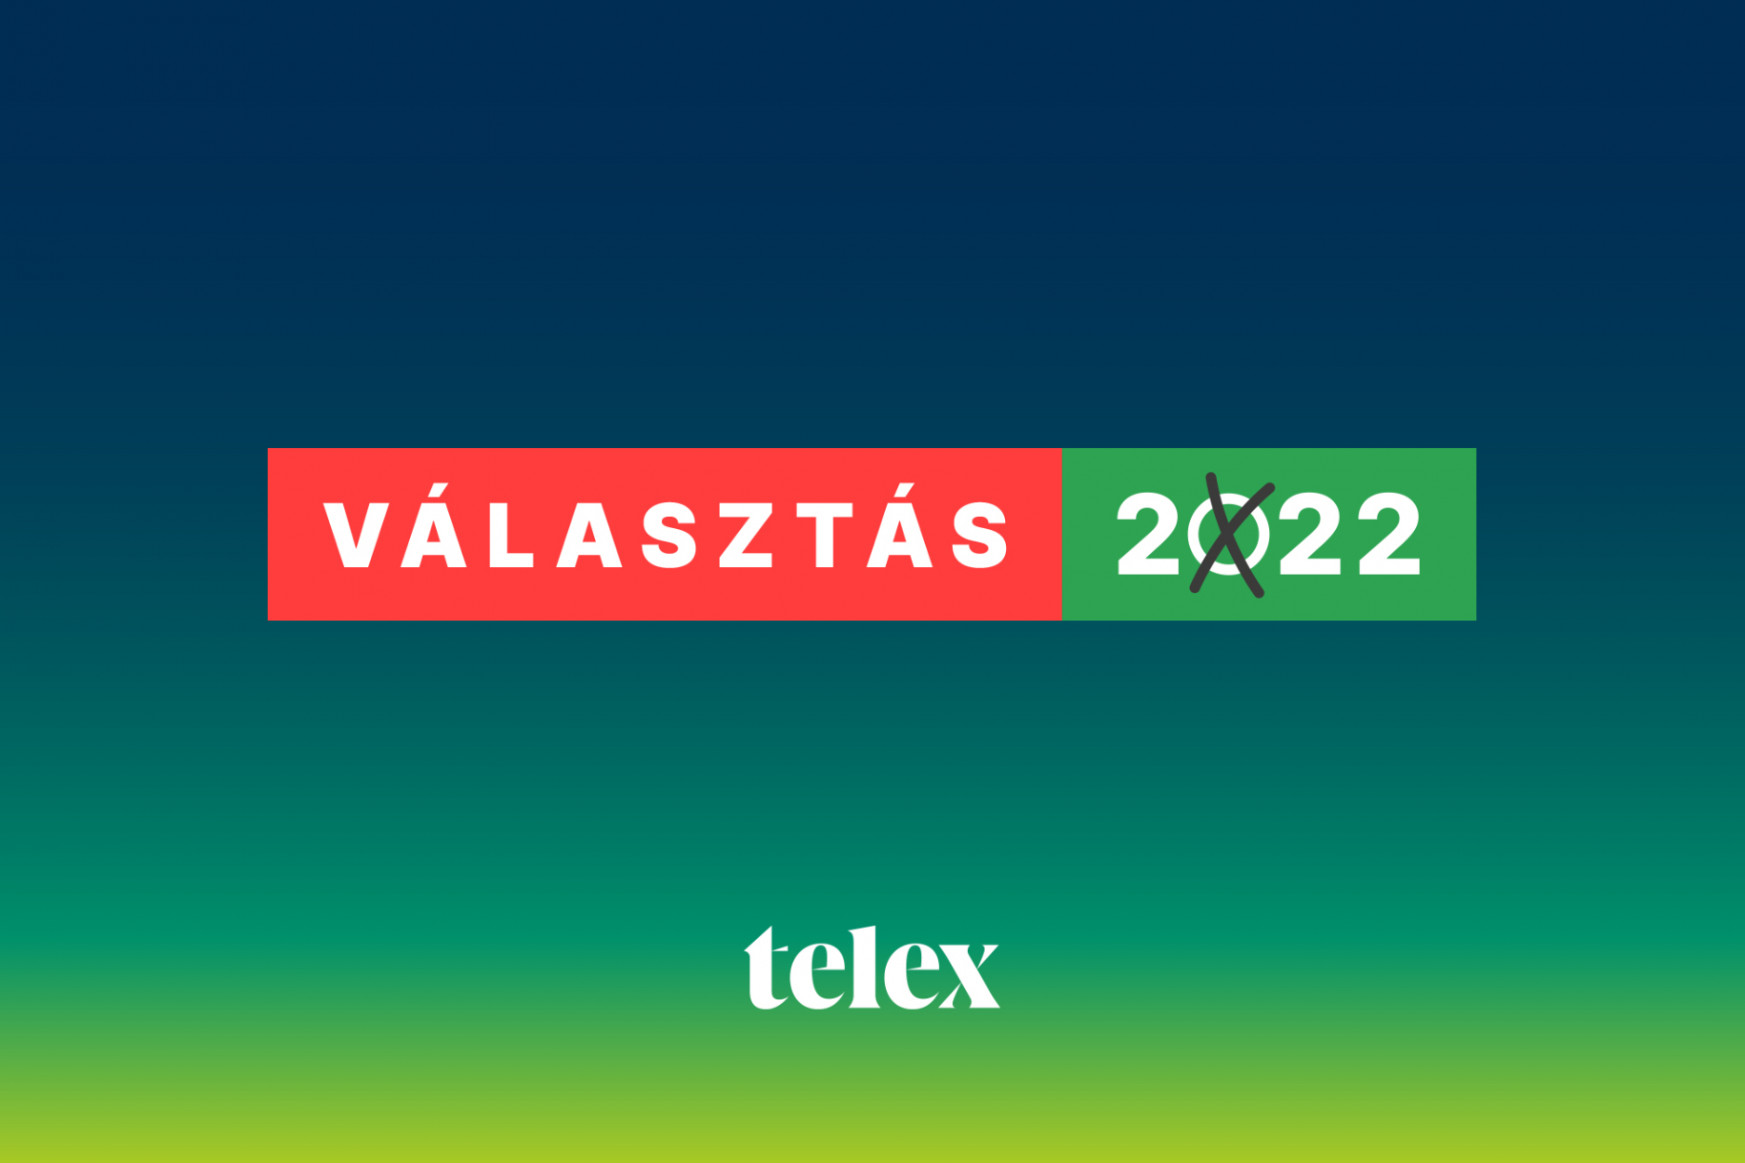 Beizzította kampánykövető üzemmódját a Telex: kövesse élő választási műsorainkat, iratkozzon fel a választási hírlevélre és a választási mobilértesítésre is!